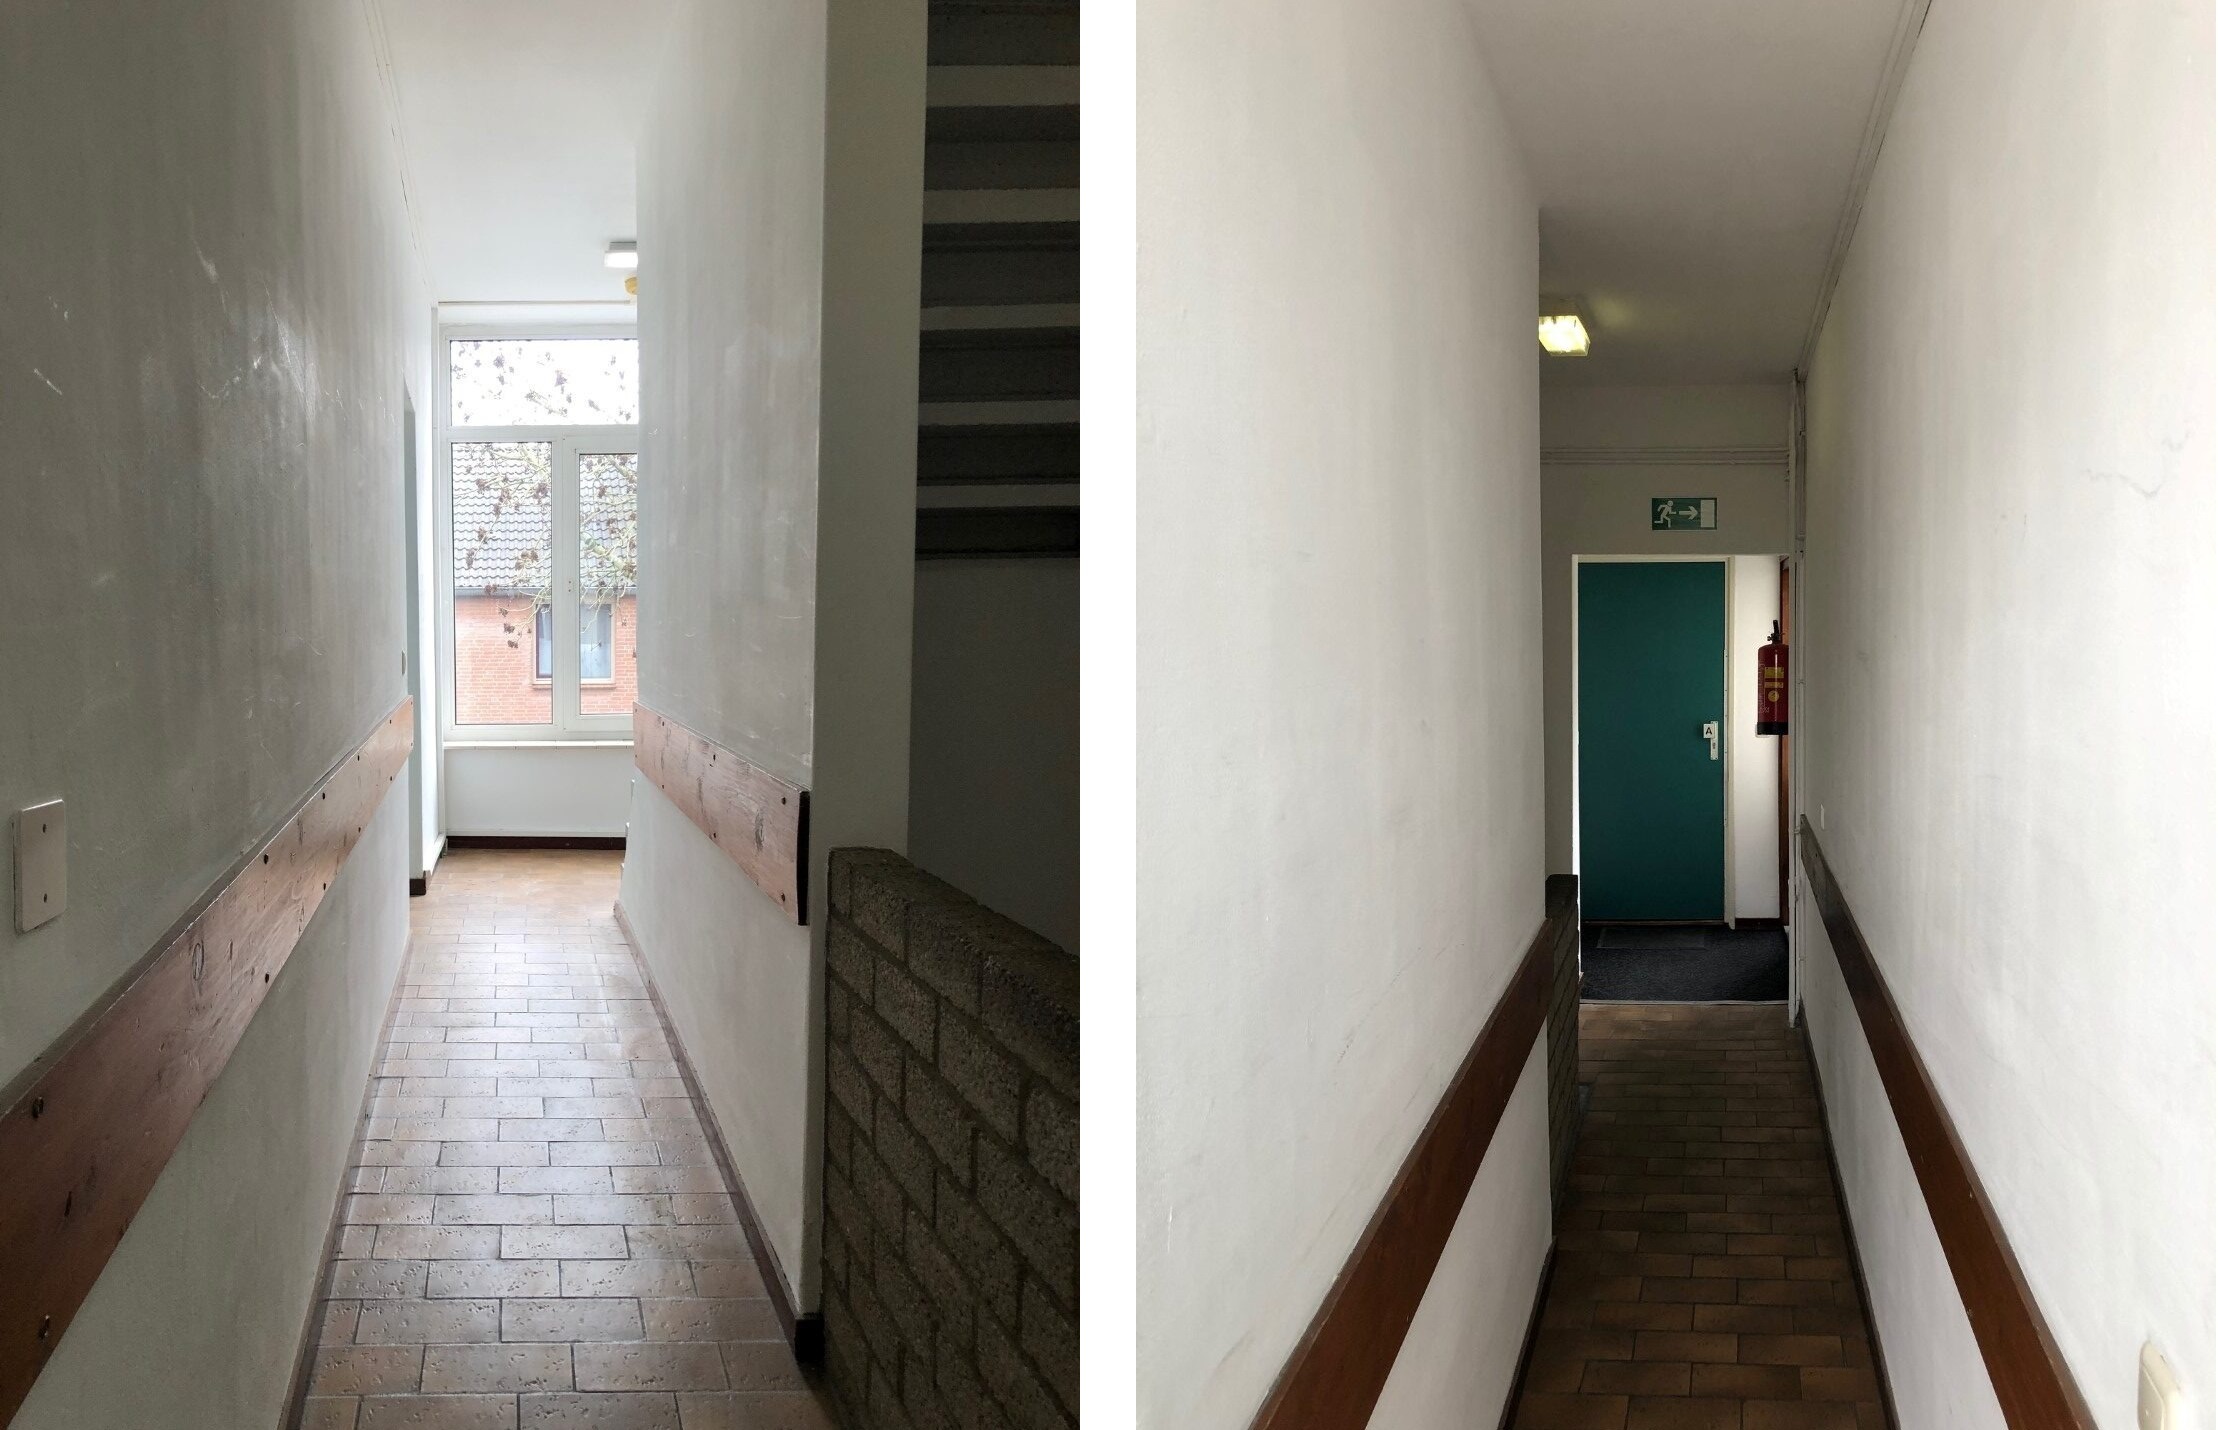 Woning / appartement - Hoensbroek - 